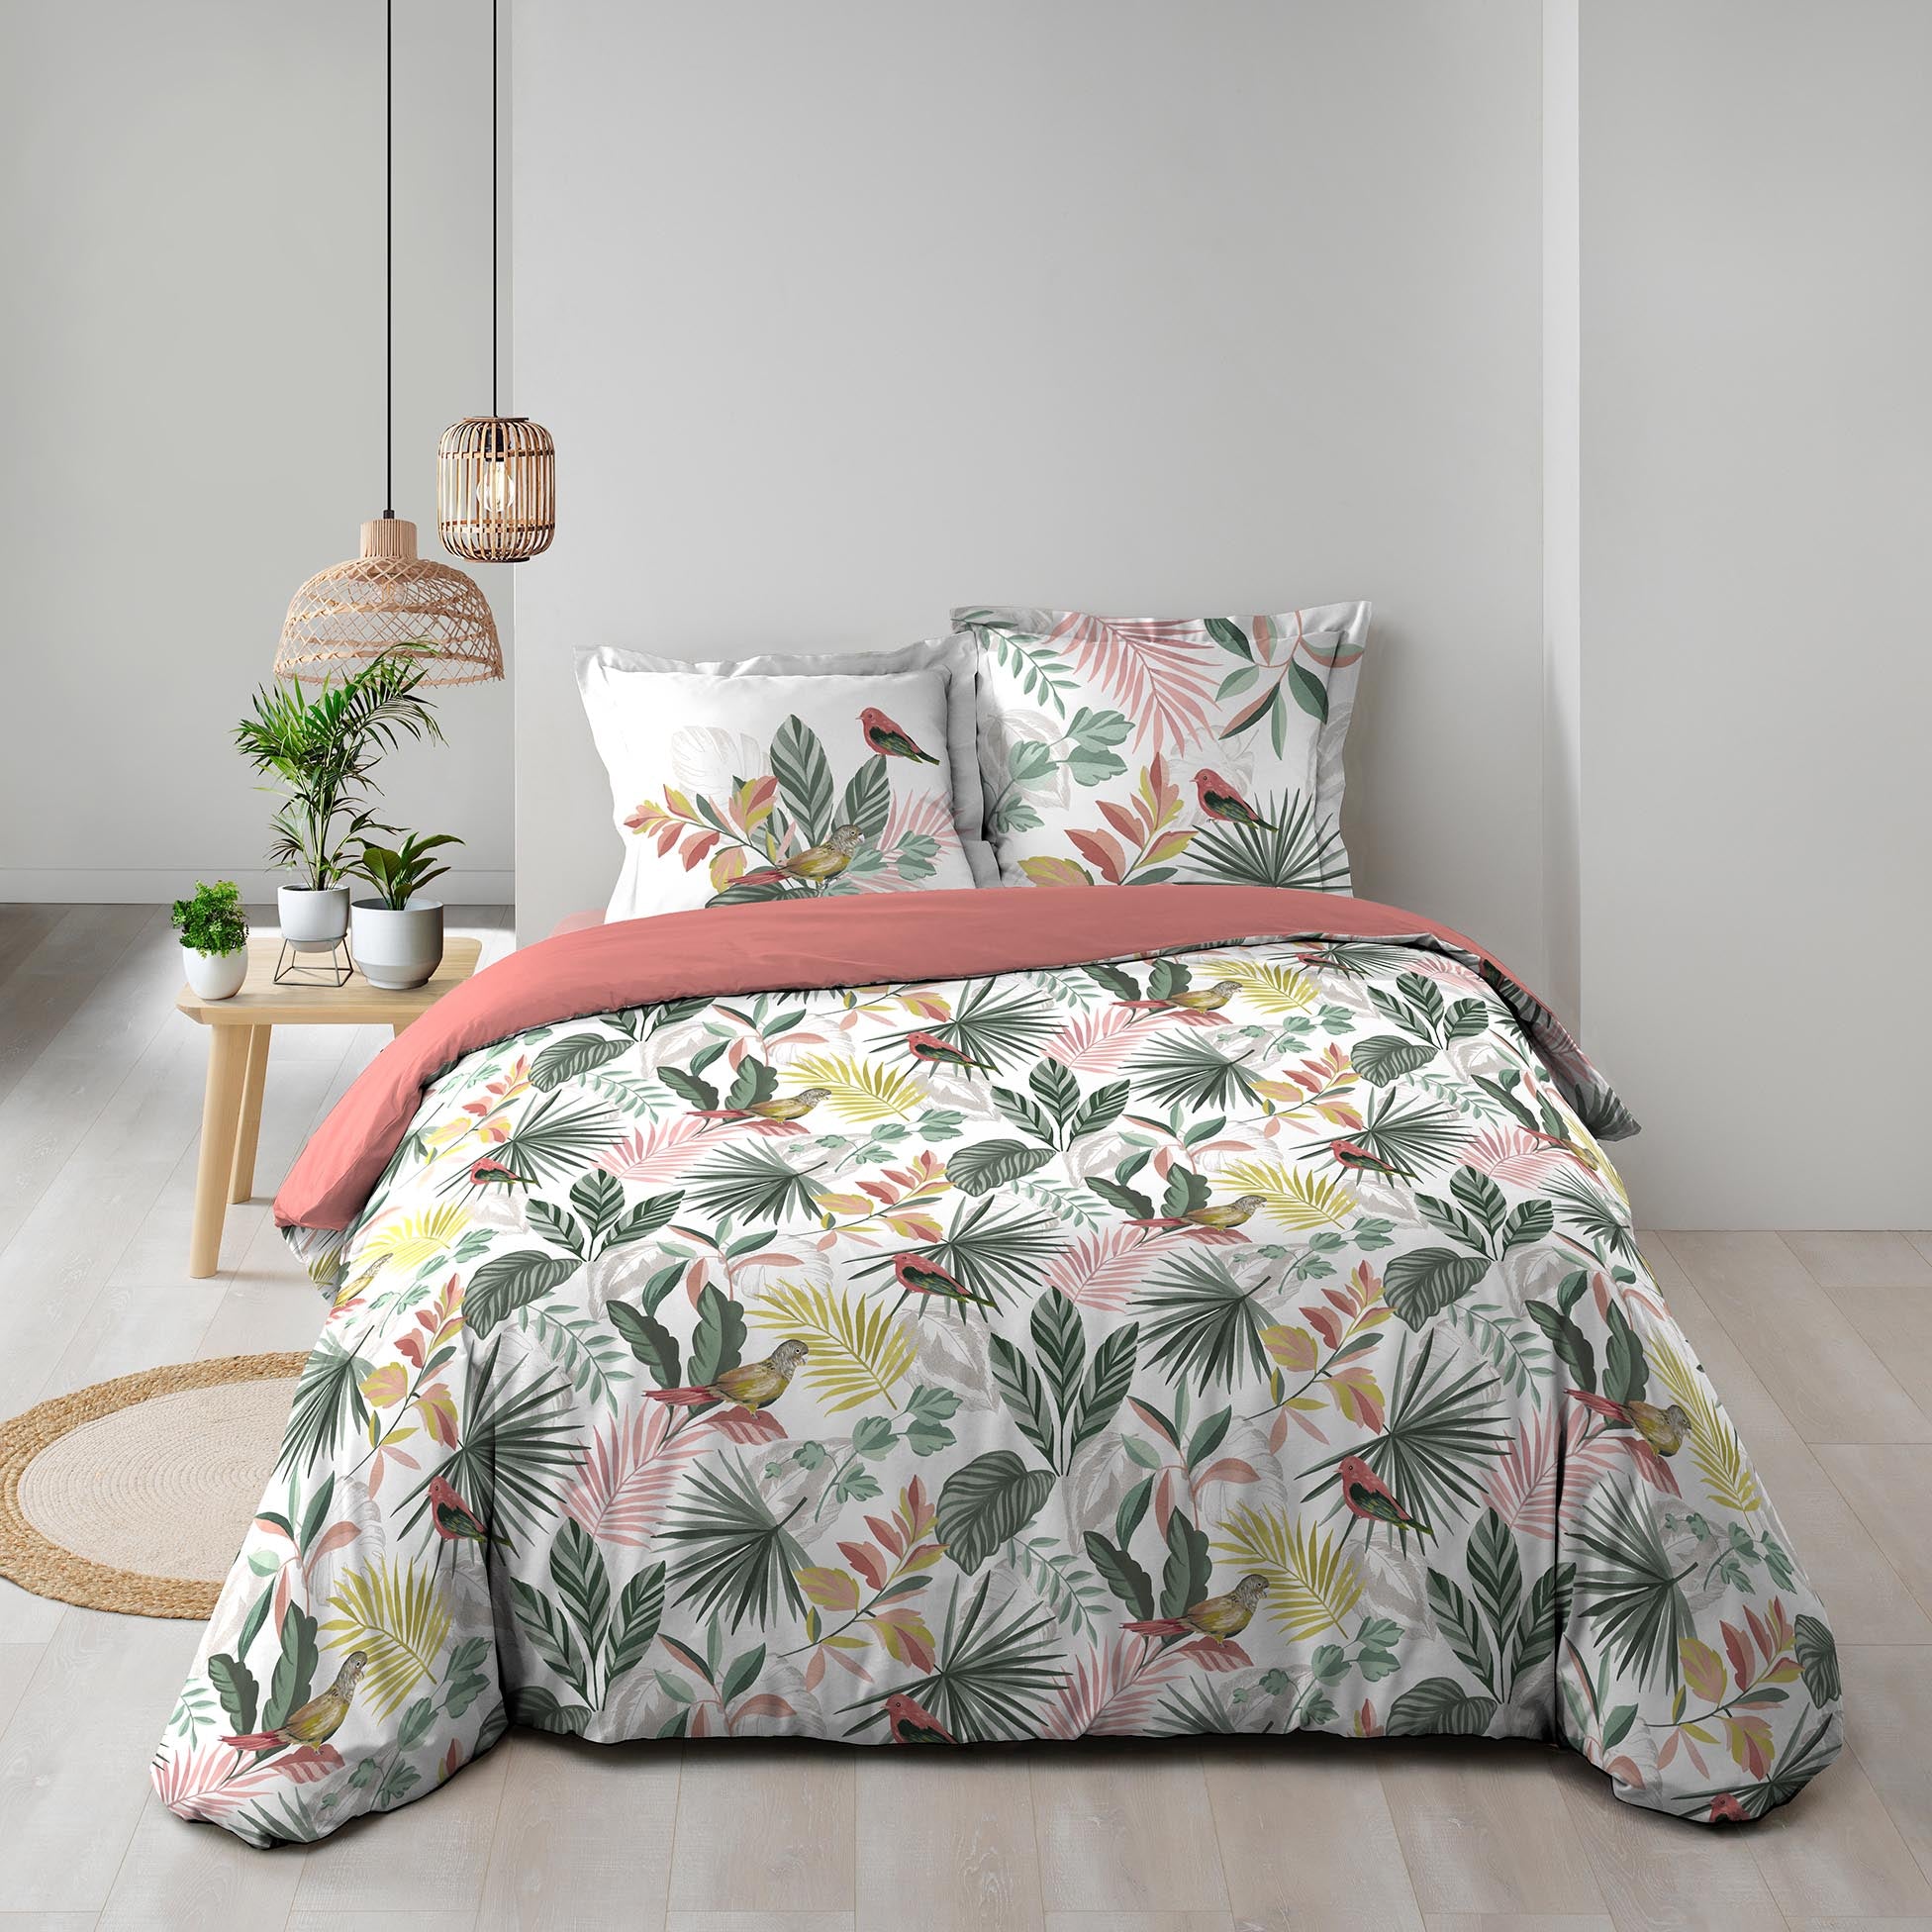 Lenjerie de pat din bumbac, Marbelina Multicolor, 240 x 220 cm (1)